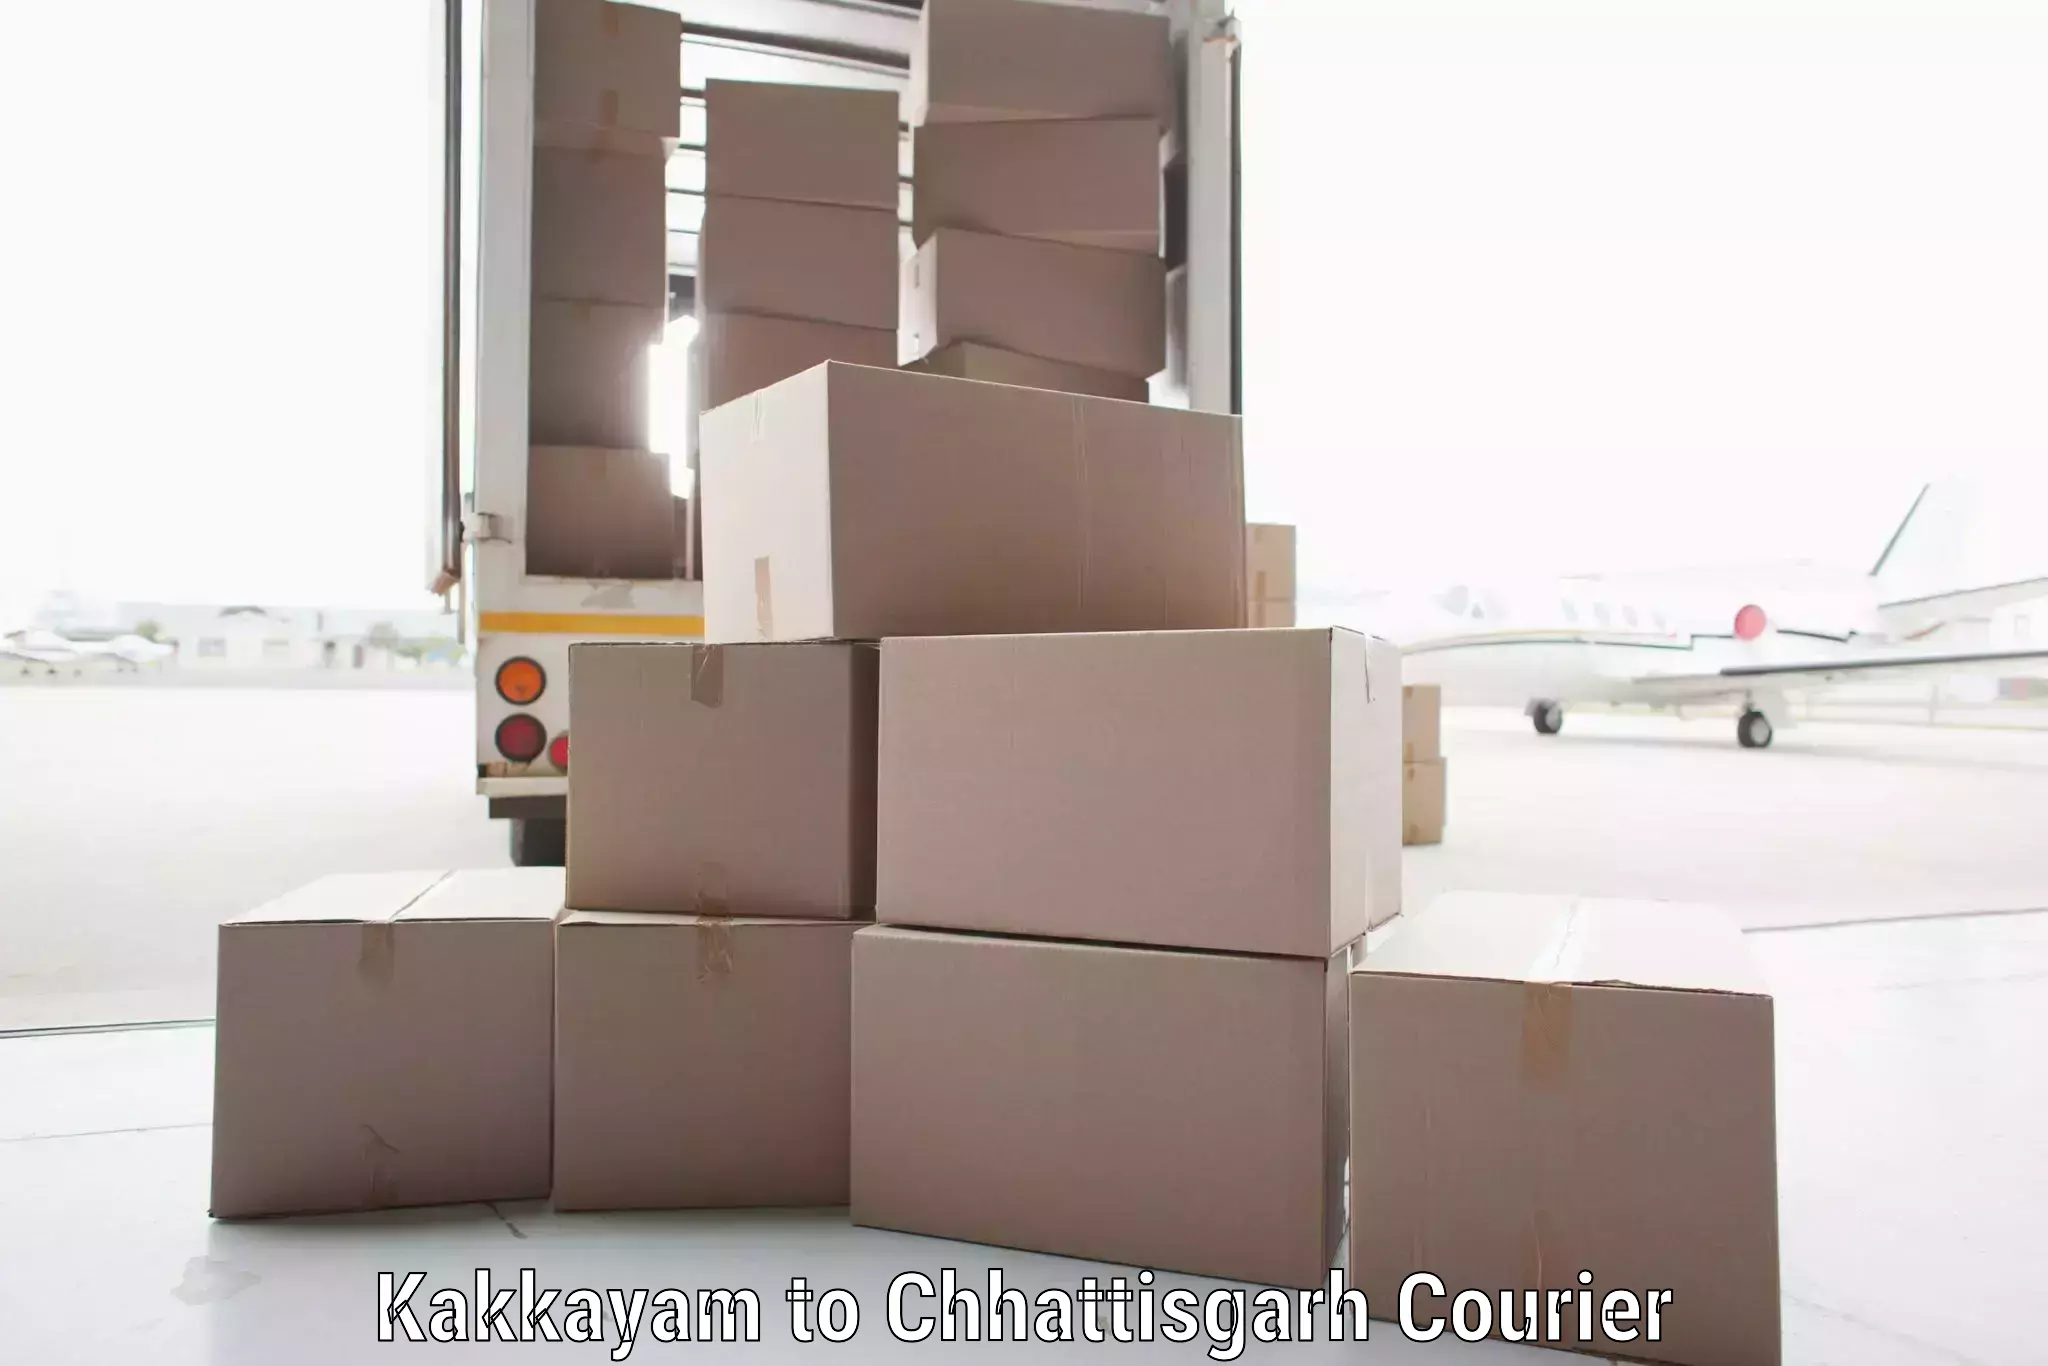 Local courier options in Kakkayam to Chirimiri